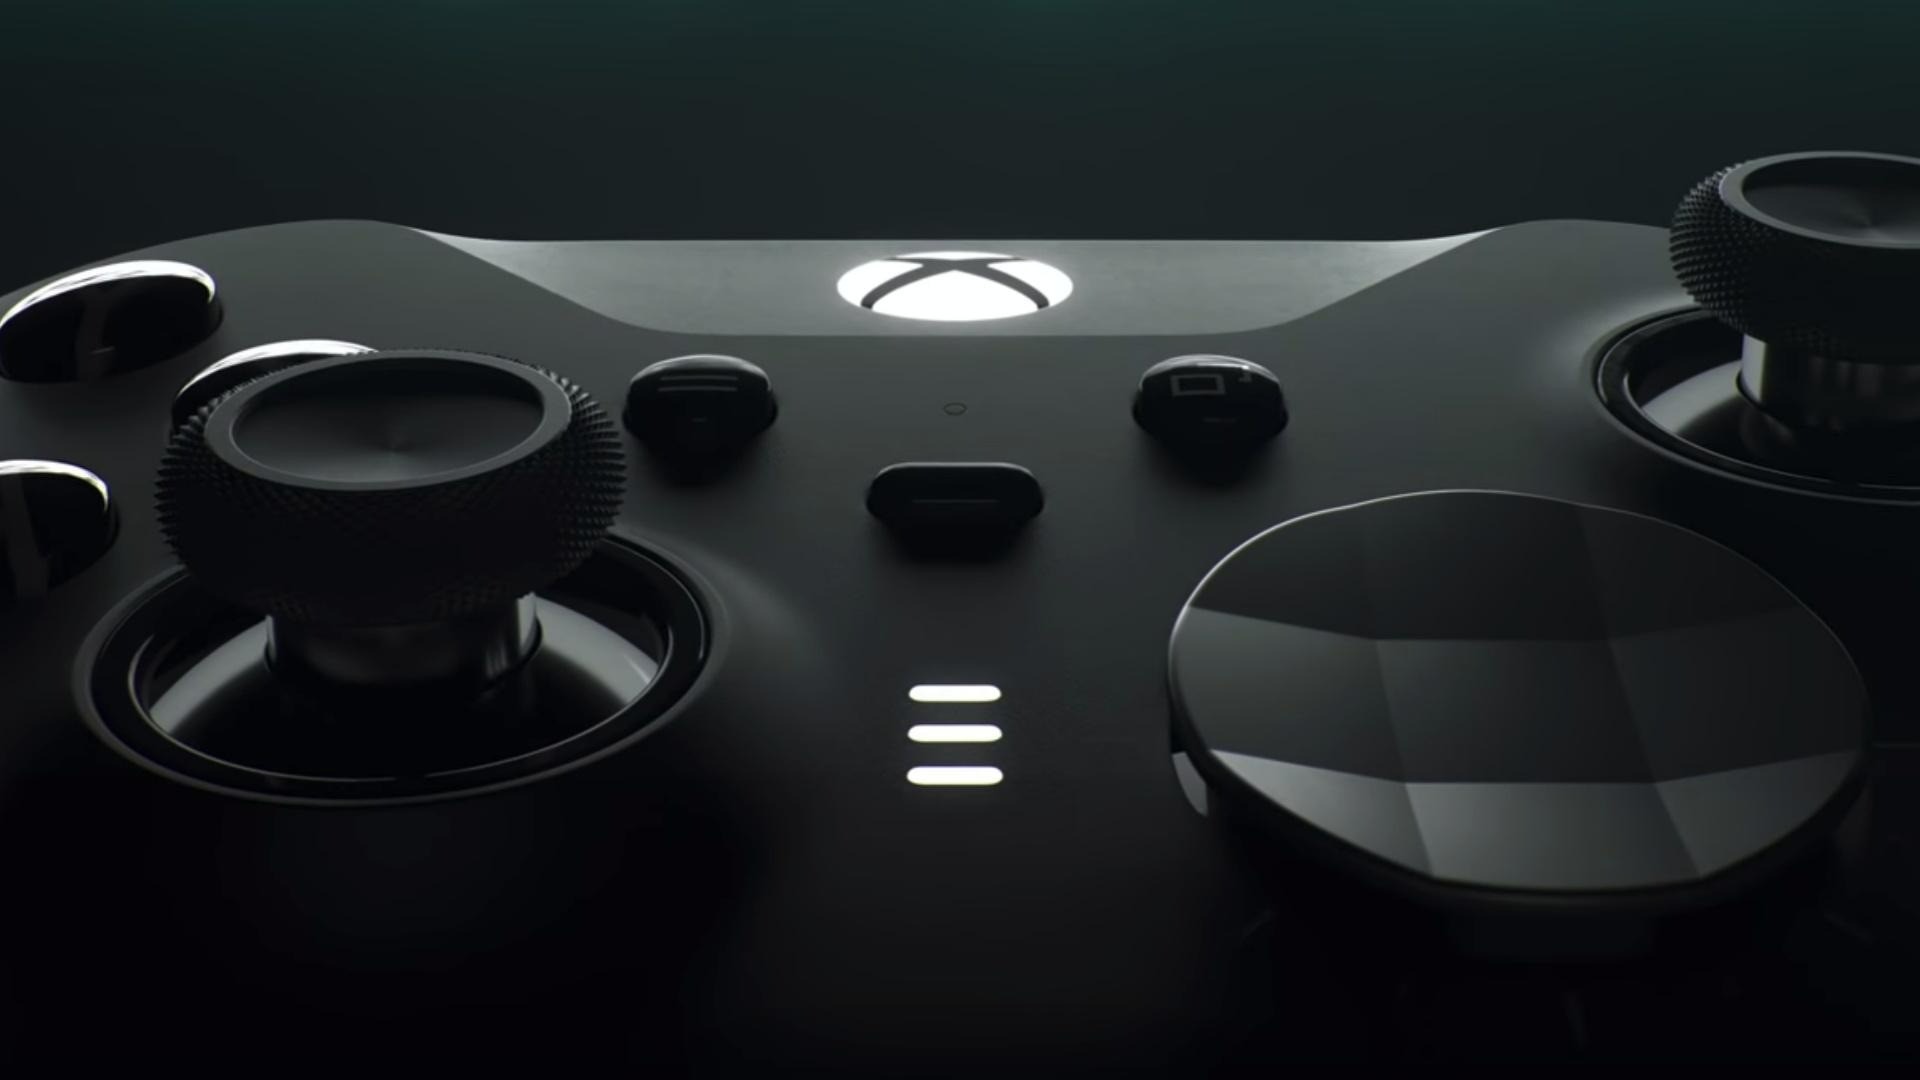 Aki Tem Ofertas: Console Xbox 360 Elite